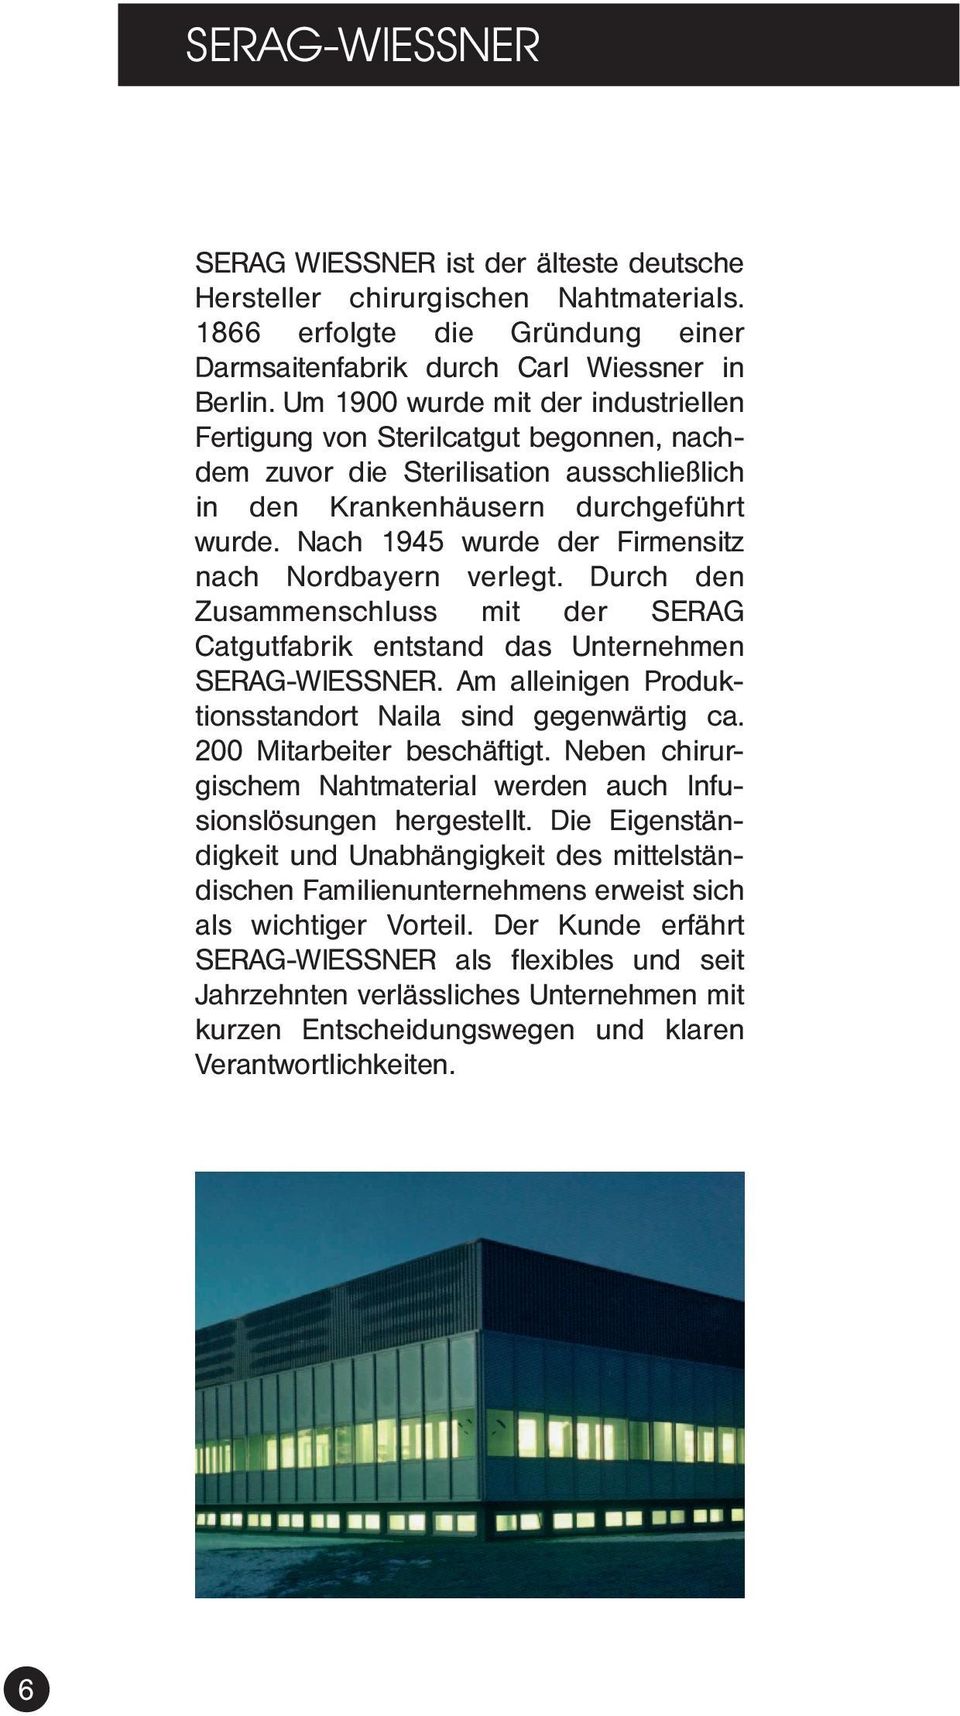 Nach 1945 wurde der Firmensitz nach Nordbayern verlegt. Durch den Zusammenschluss mit der SERAG Catgutfabrik entstand das Unternehmen SERAG-WIESSNER.